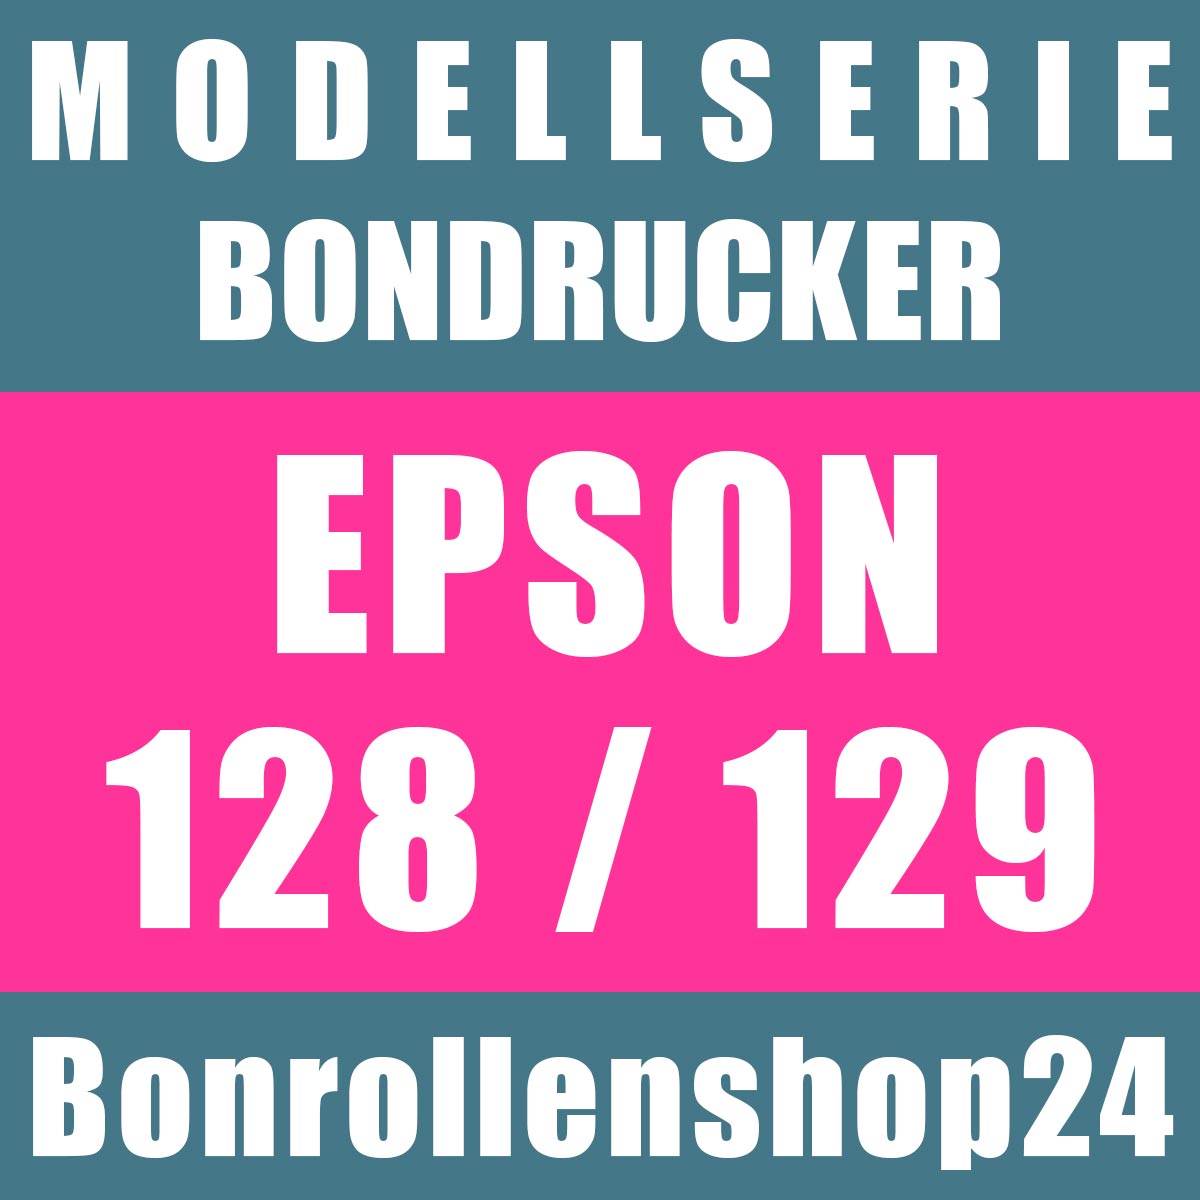 Bonrollen für Bondrucker der Serie Epson 128 und Epson 129